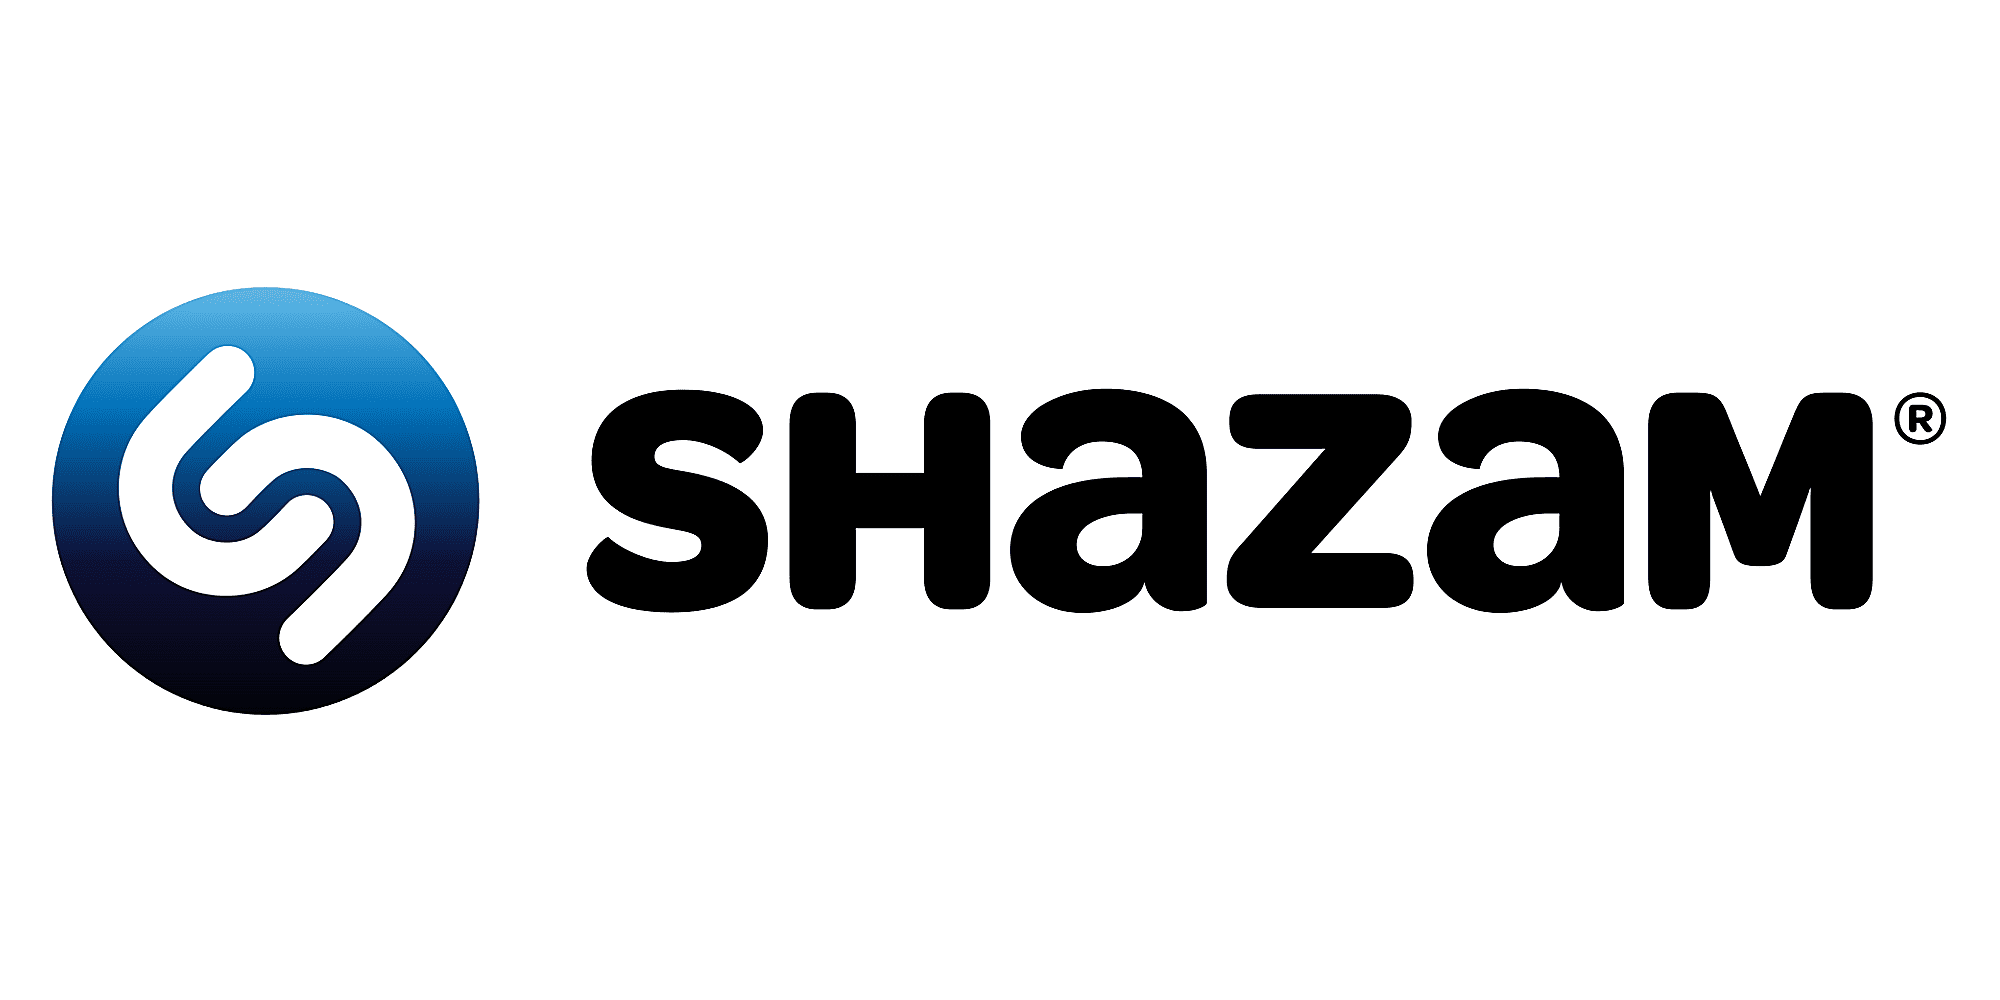 shazam-logo